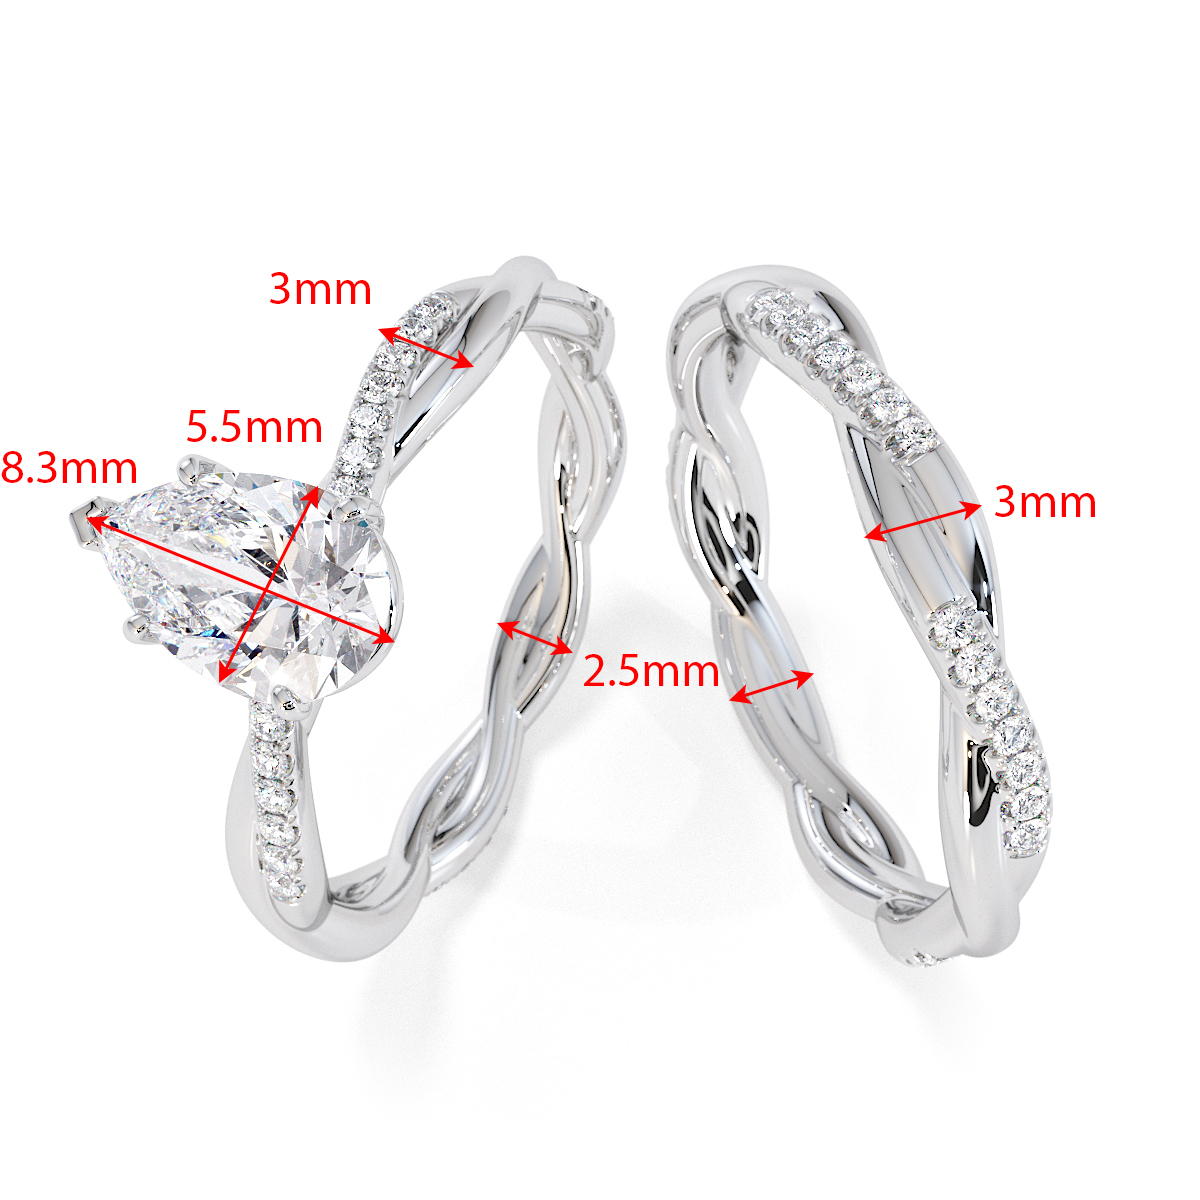 Gold / Platinum Tanzanite and Diamond Engagement Ring RZ3390